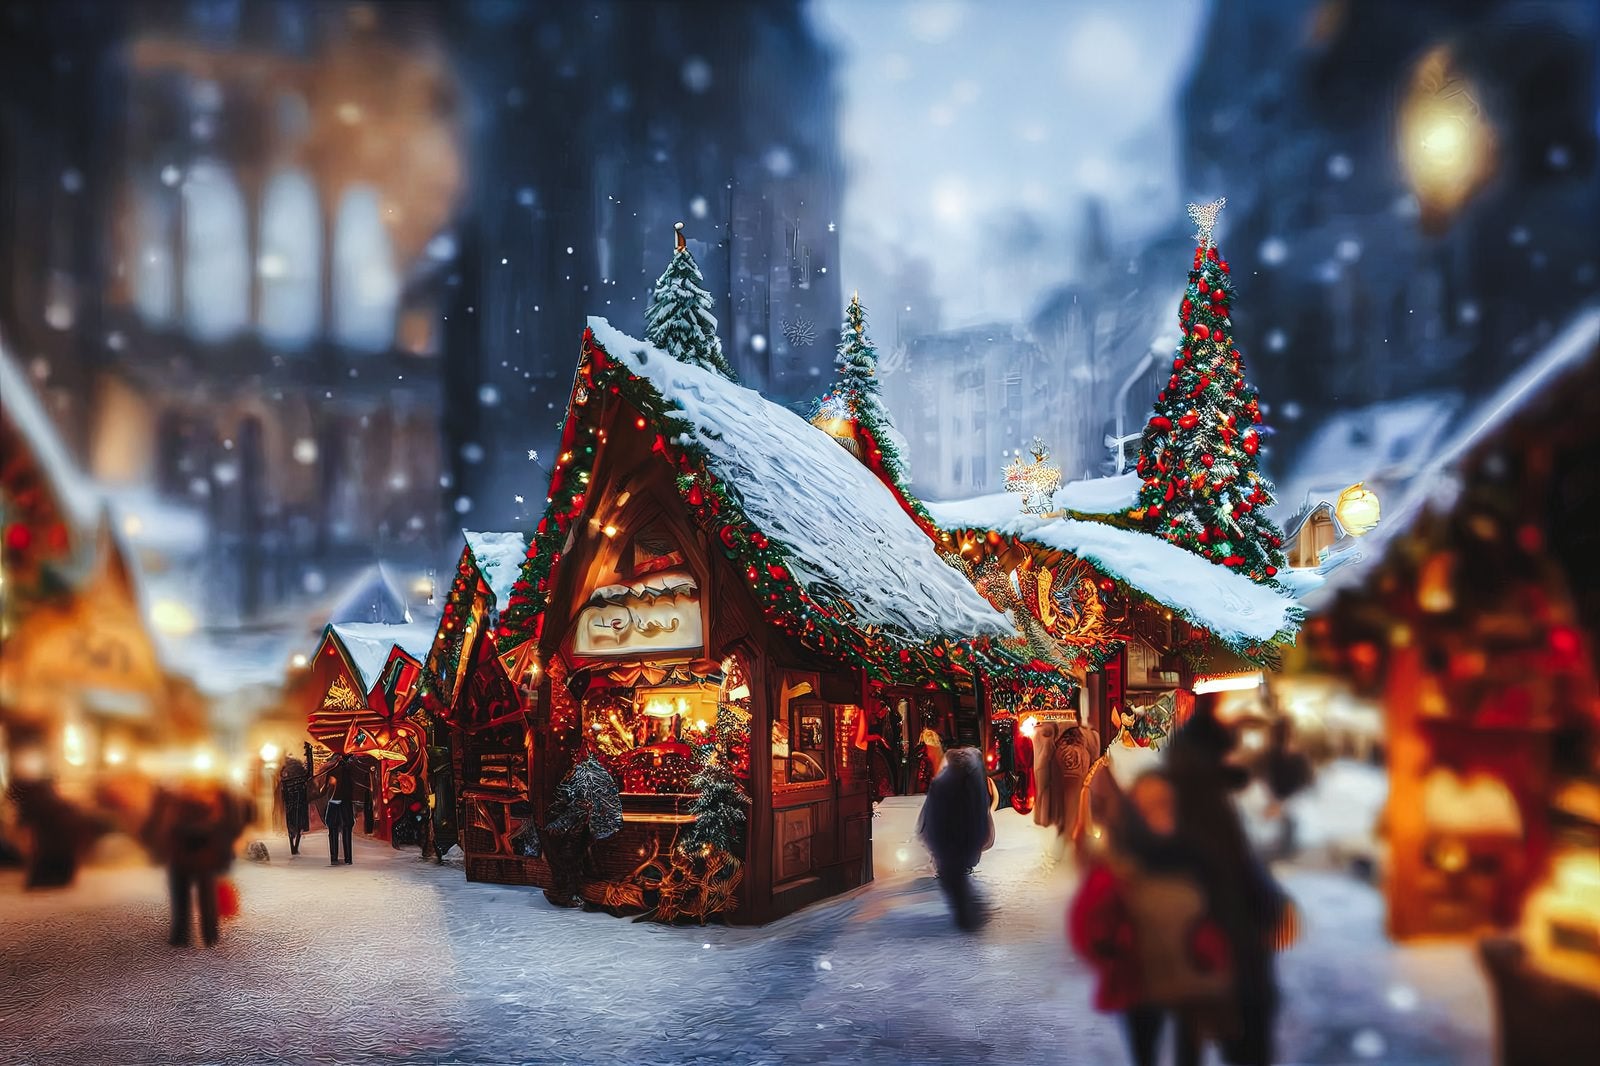 「クリスマスシーズンの村の様子」の写真